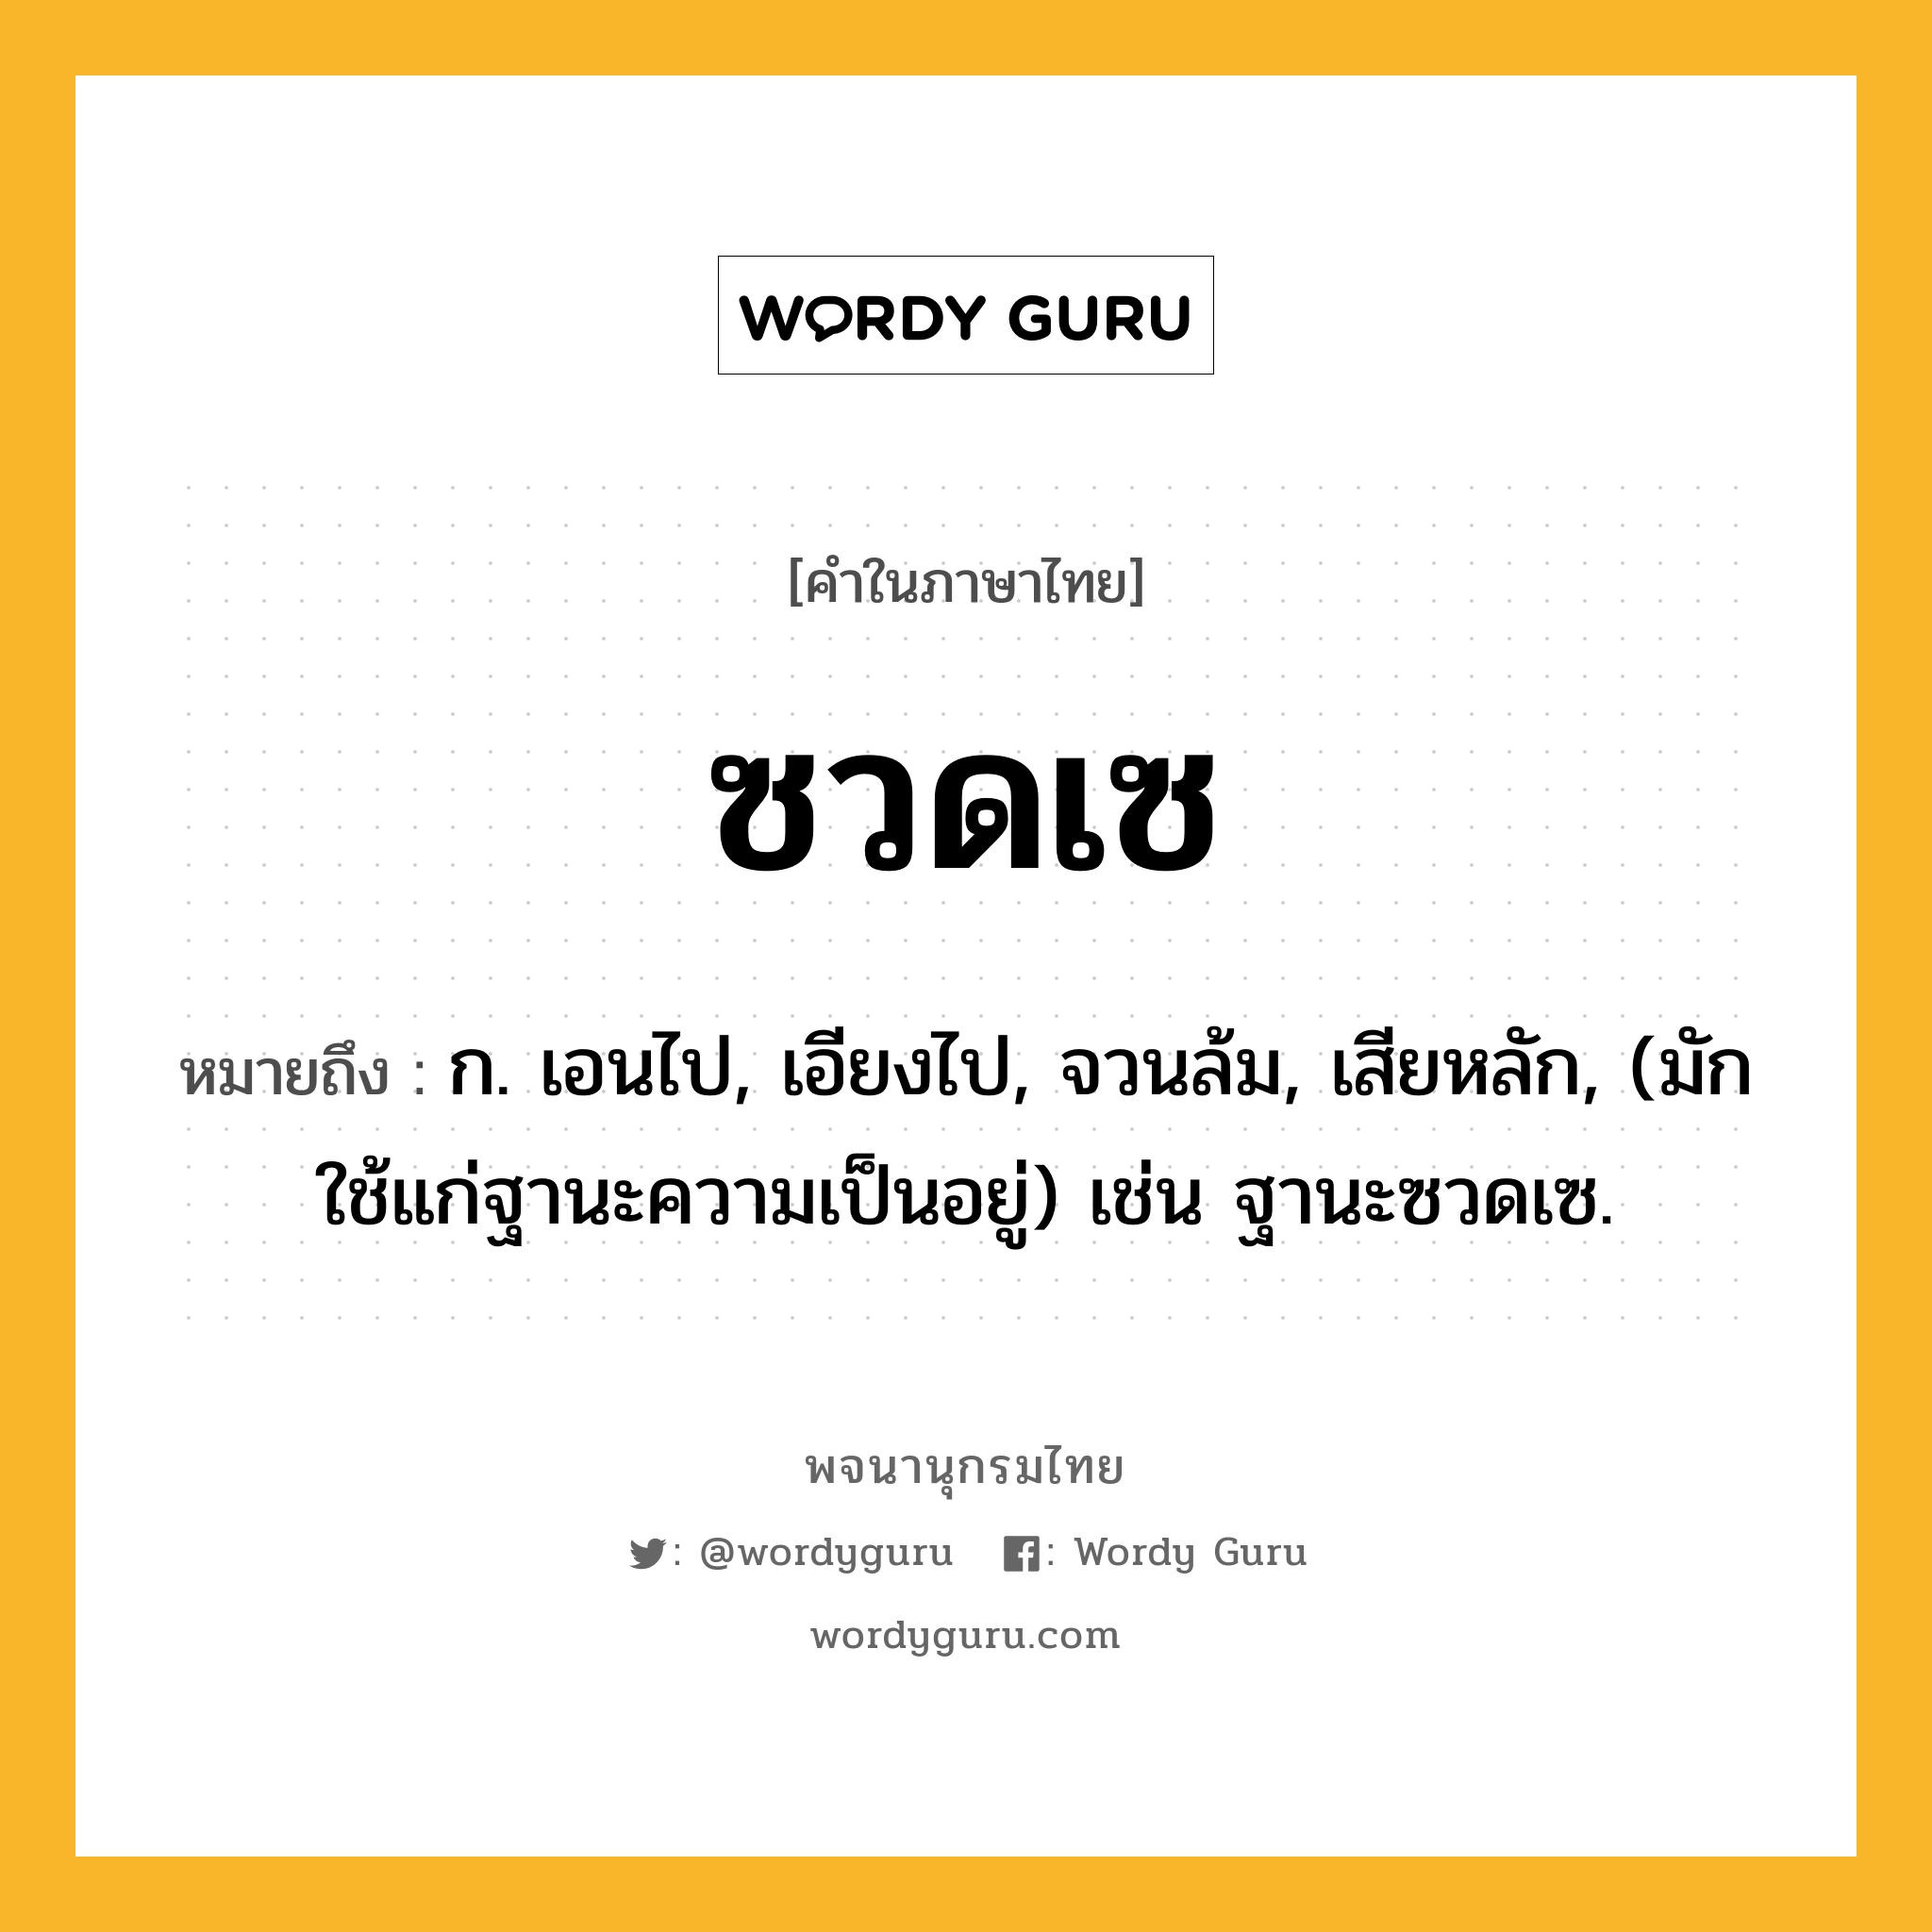 ซวดเซ หมายถึงอะไร?, คำในภาษาไทย ซวดเซ หมายถึง ก. เอนไป, เอียงไป, จวนล้ม, เสียหลัก, (มักใช้แก่ฐานะความเป็นอยู่) เช่น ฐานะซวดเซ.